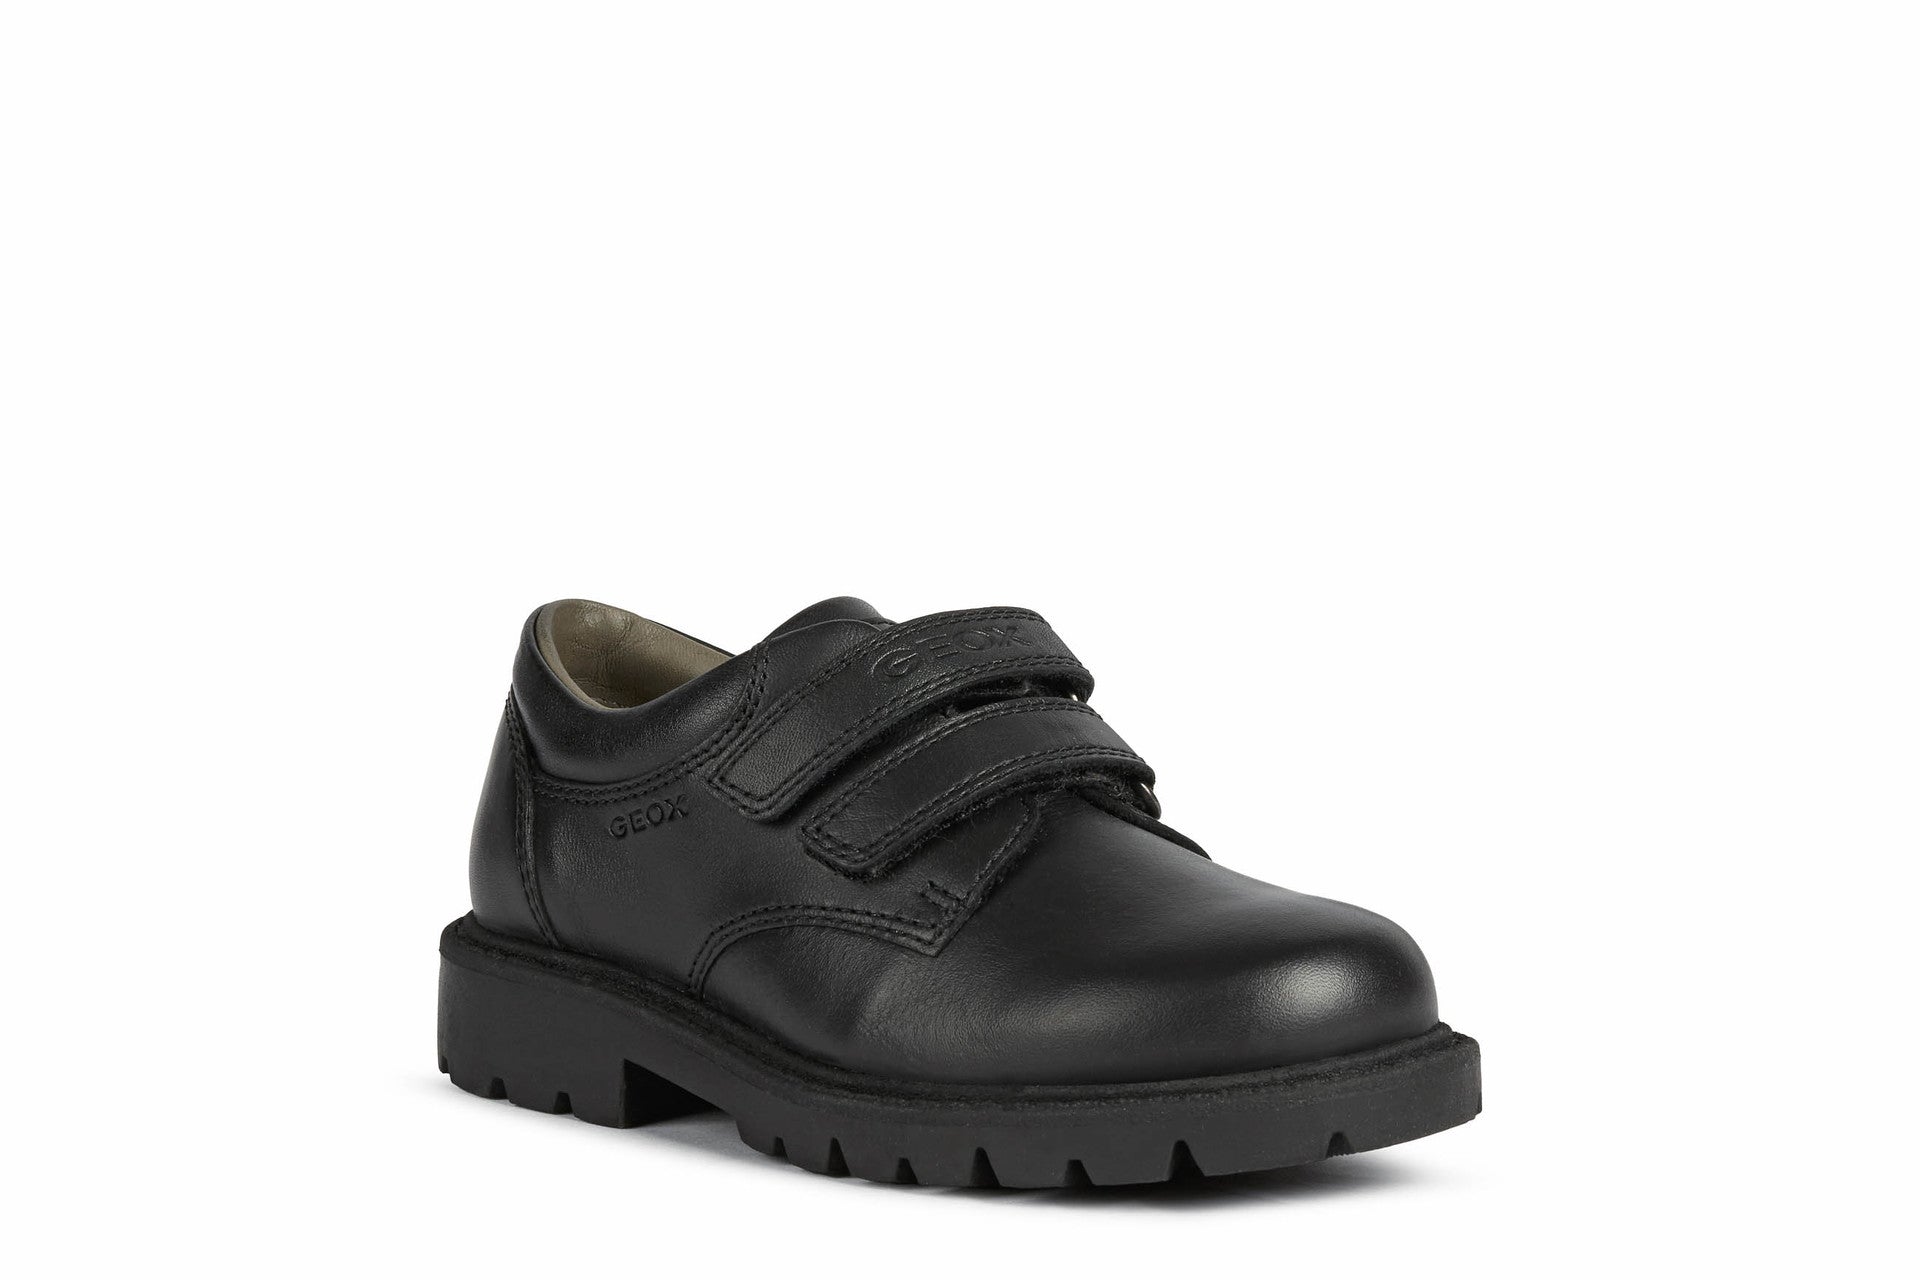 Geox - Shaylax Boy - Black - School Shoes